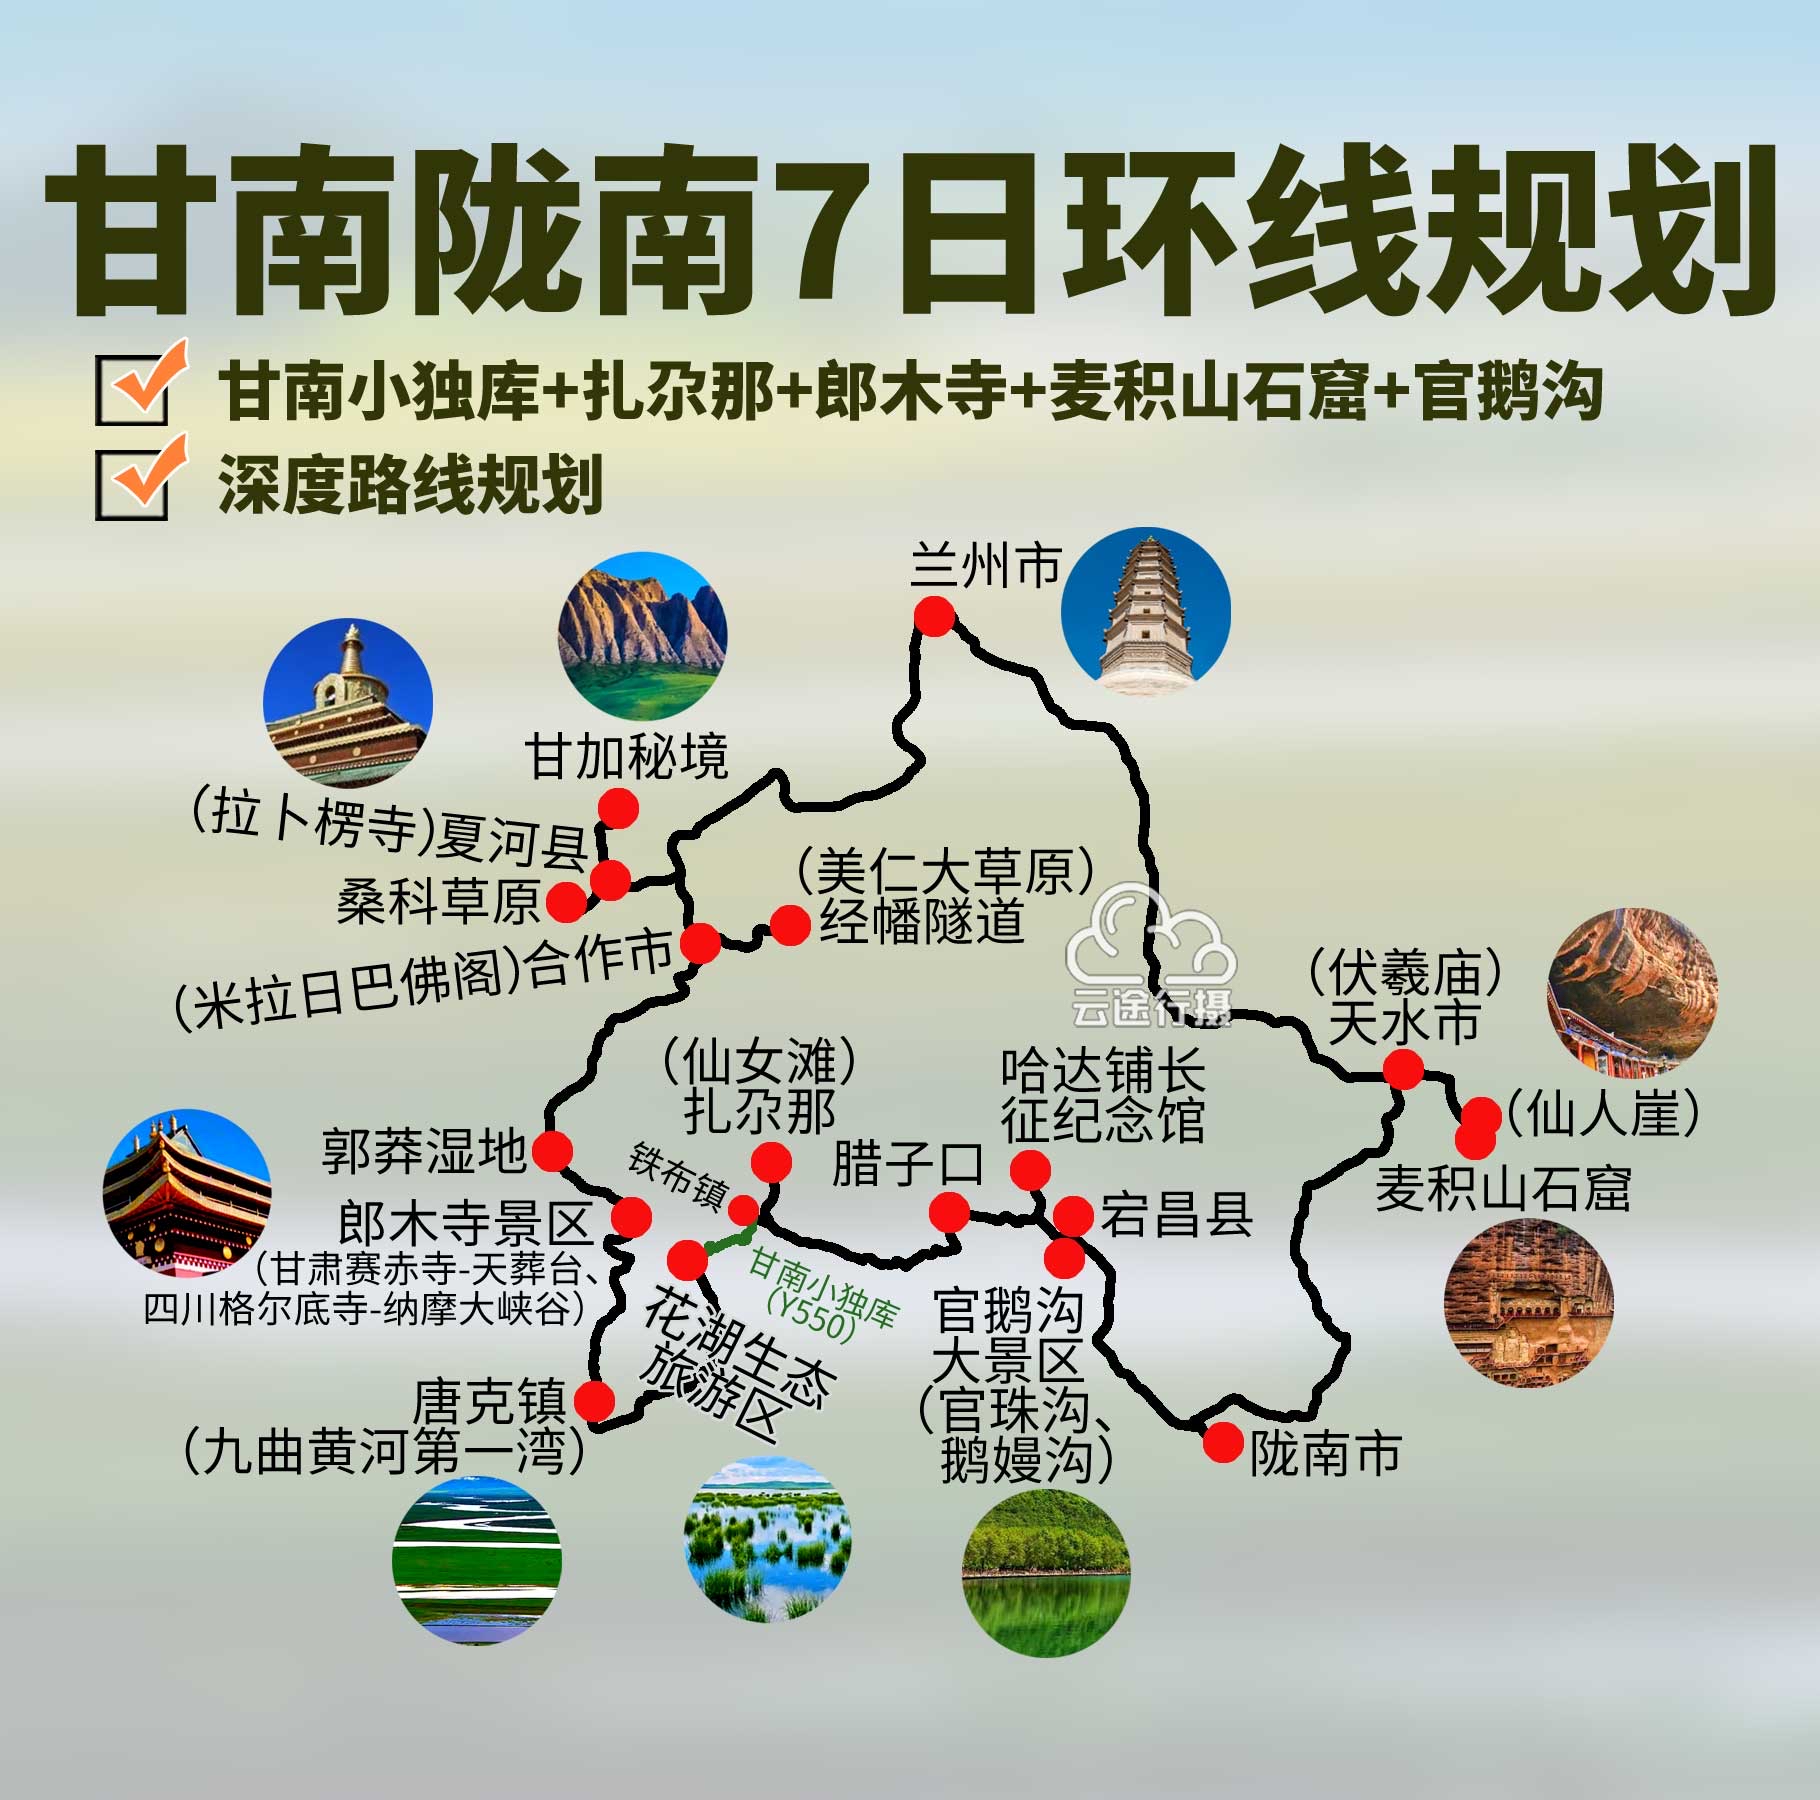 甘肃甘南陇南天水连线7日环线旅游路线规划攻略,深入甘南陇南天水地区